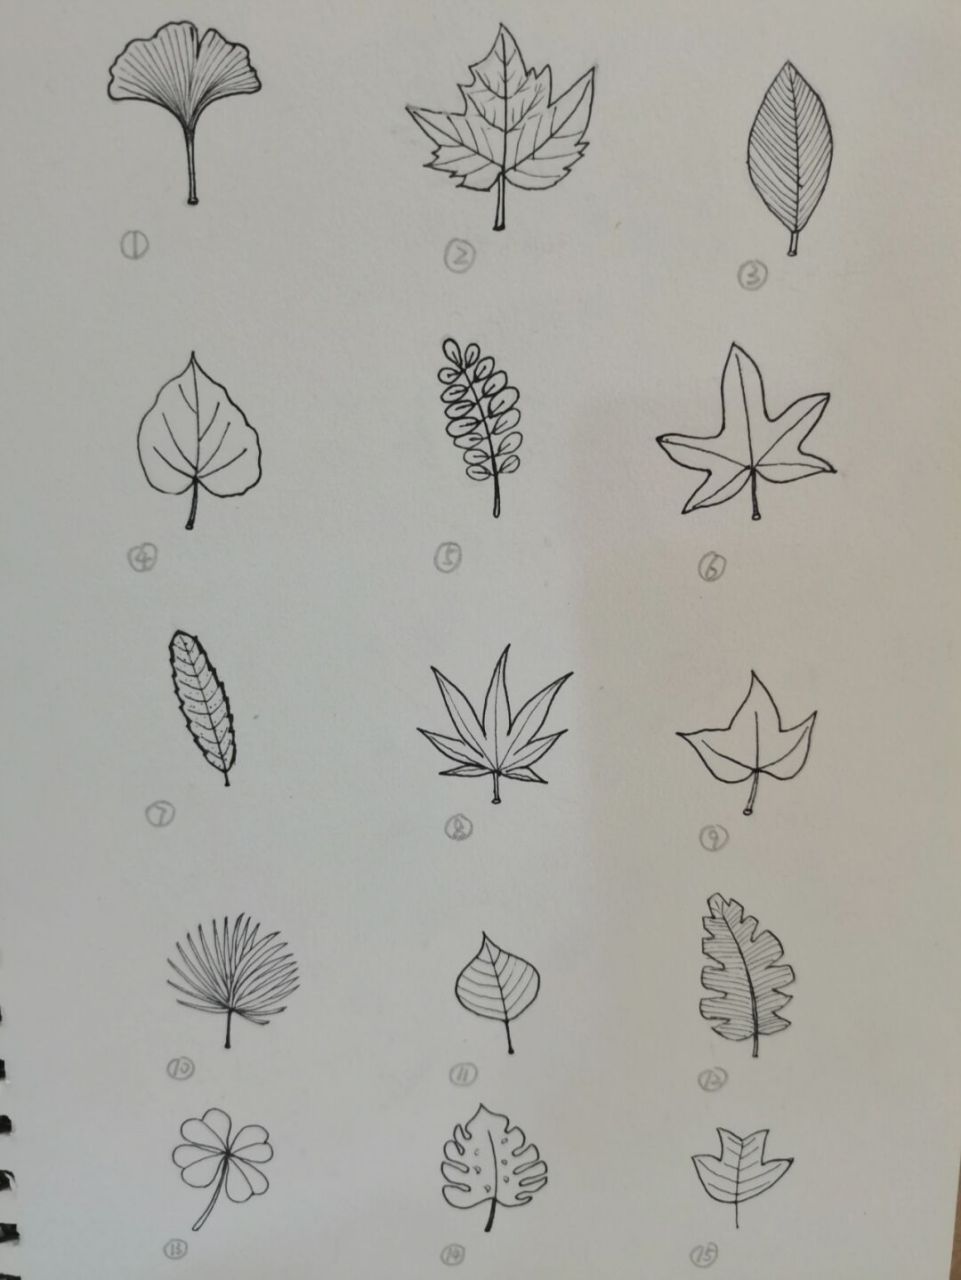 各种树叶简笔画及名称图片